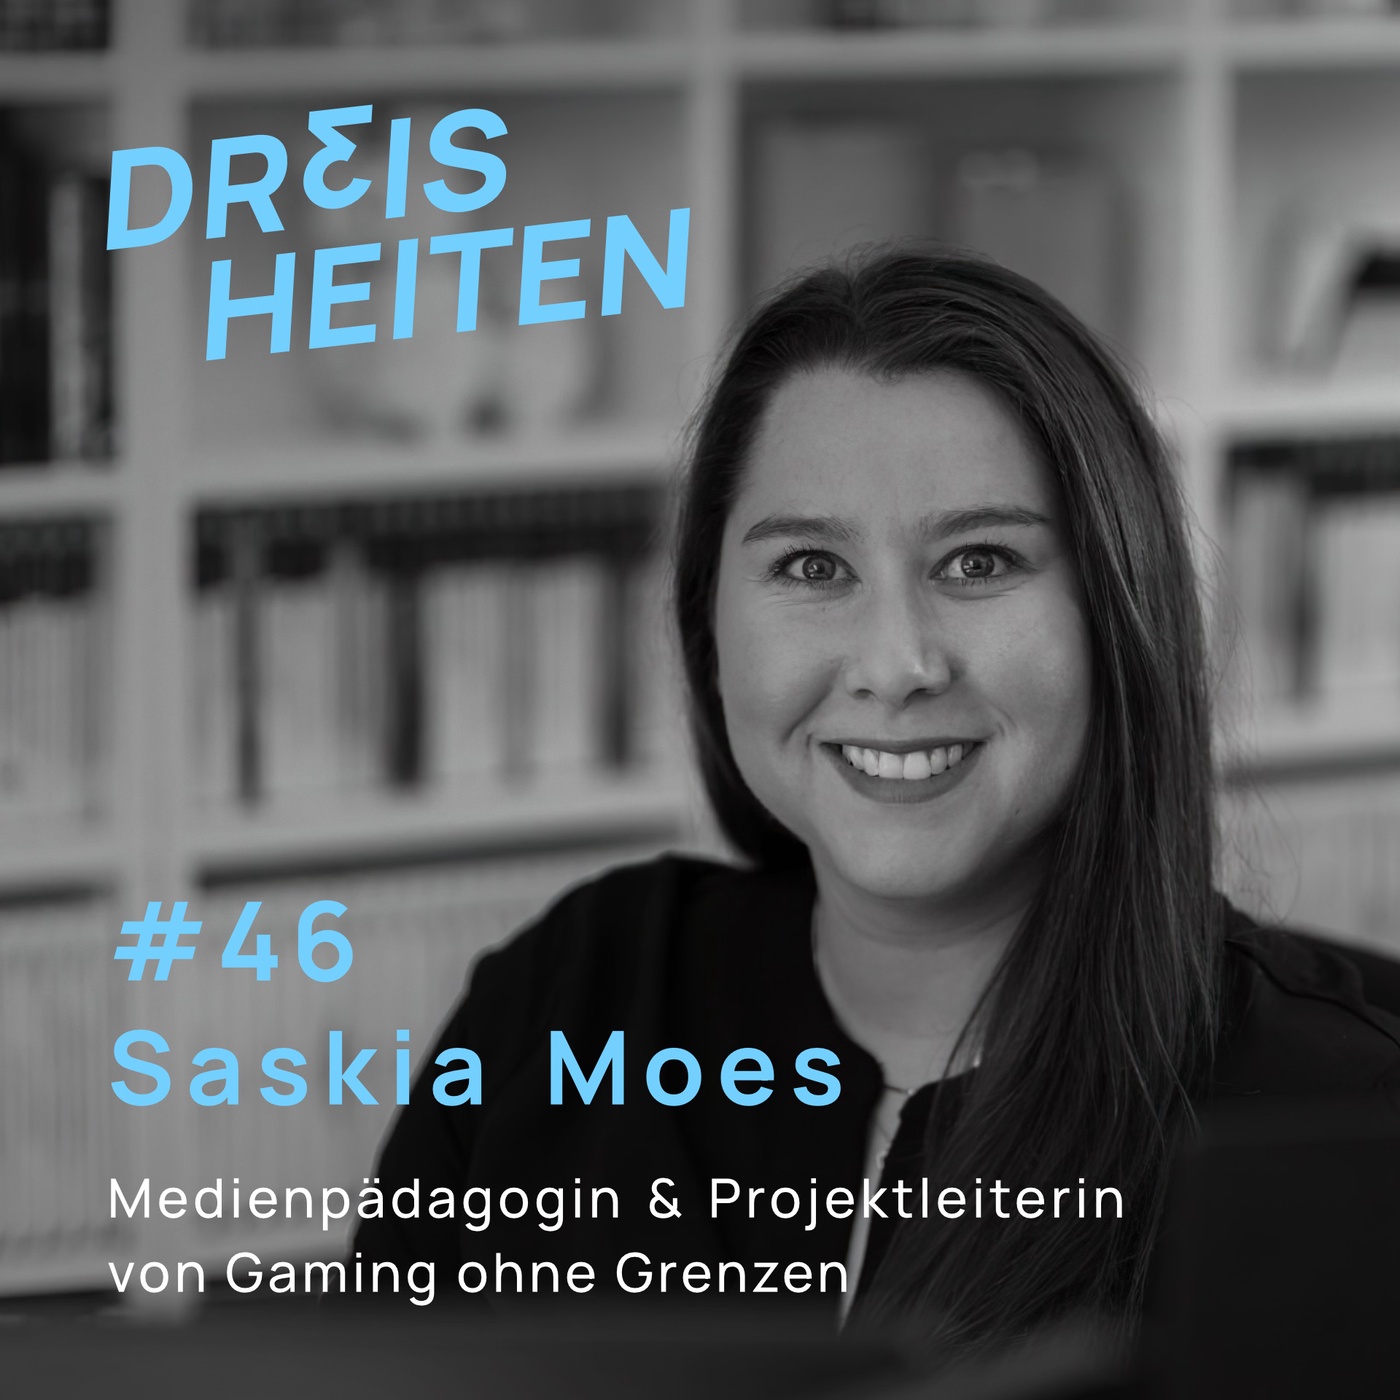 #46 - Saskia Moes - Medienpädagogin & Projektleiterin von Gaming ohne Grenzen (Inklusion & Barrierefreiheit in Spielen)